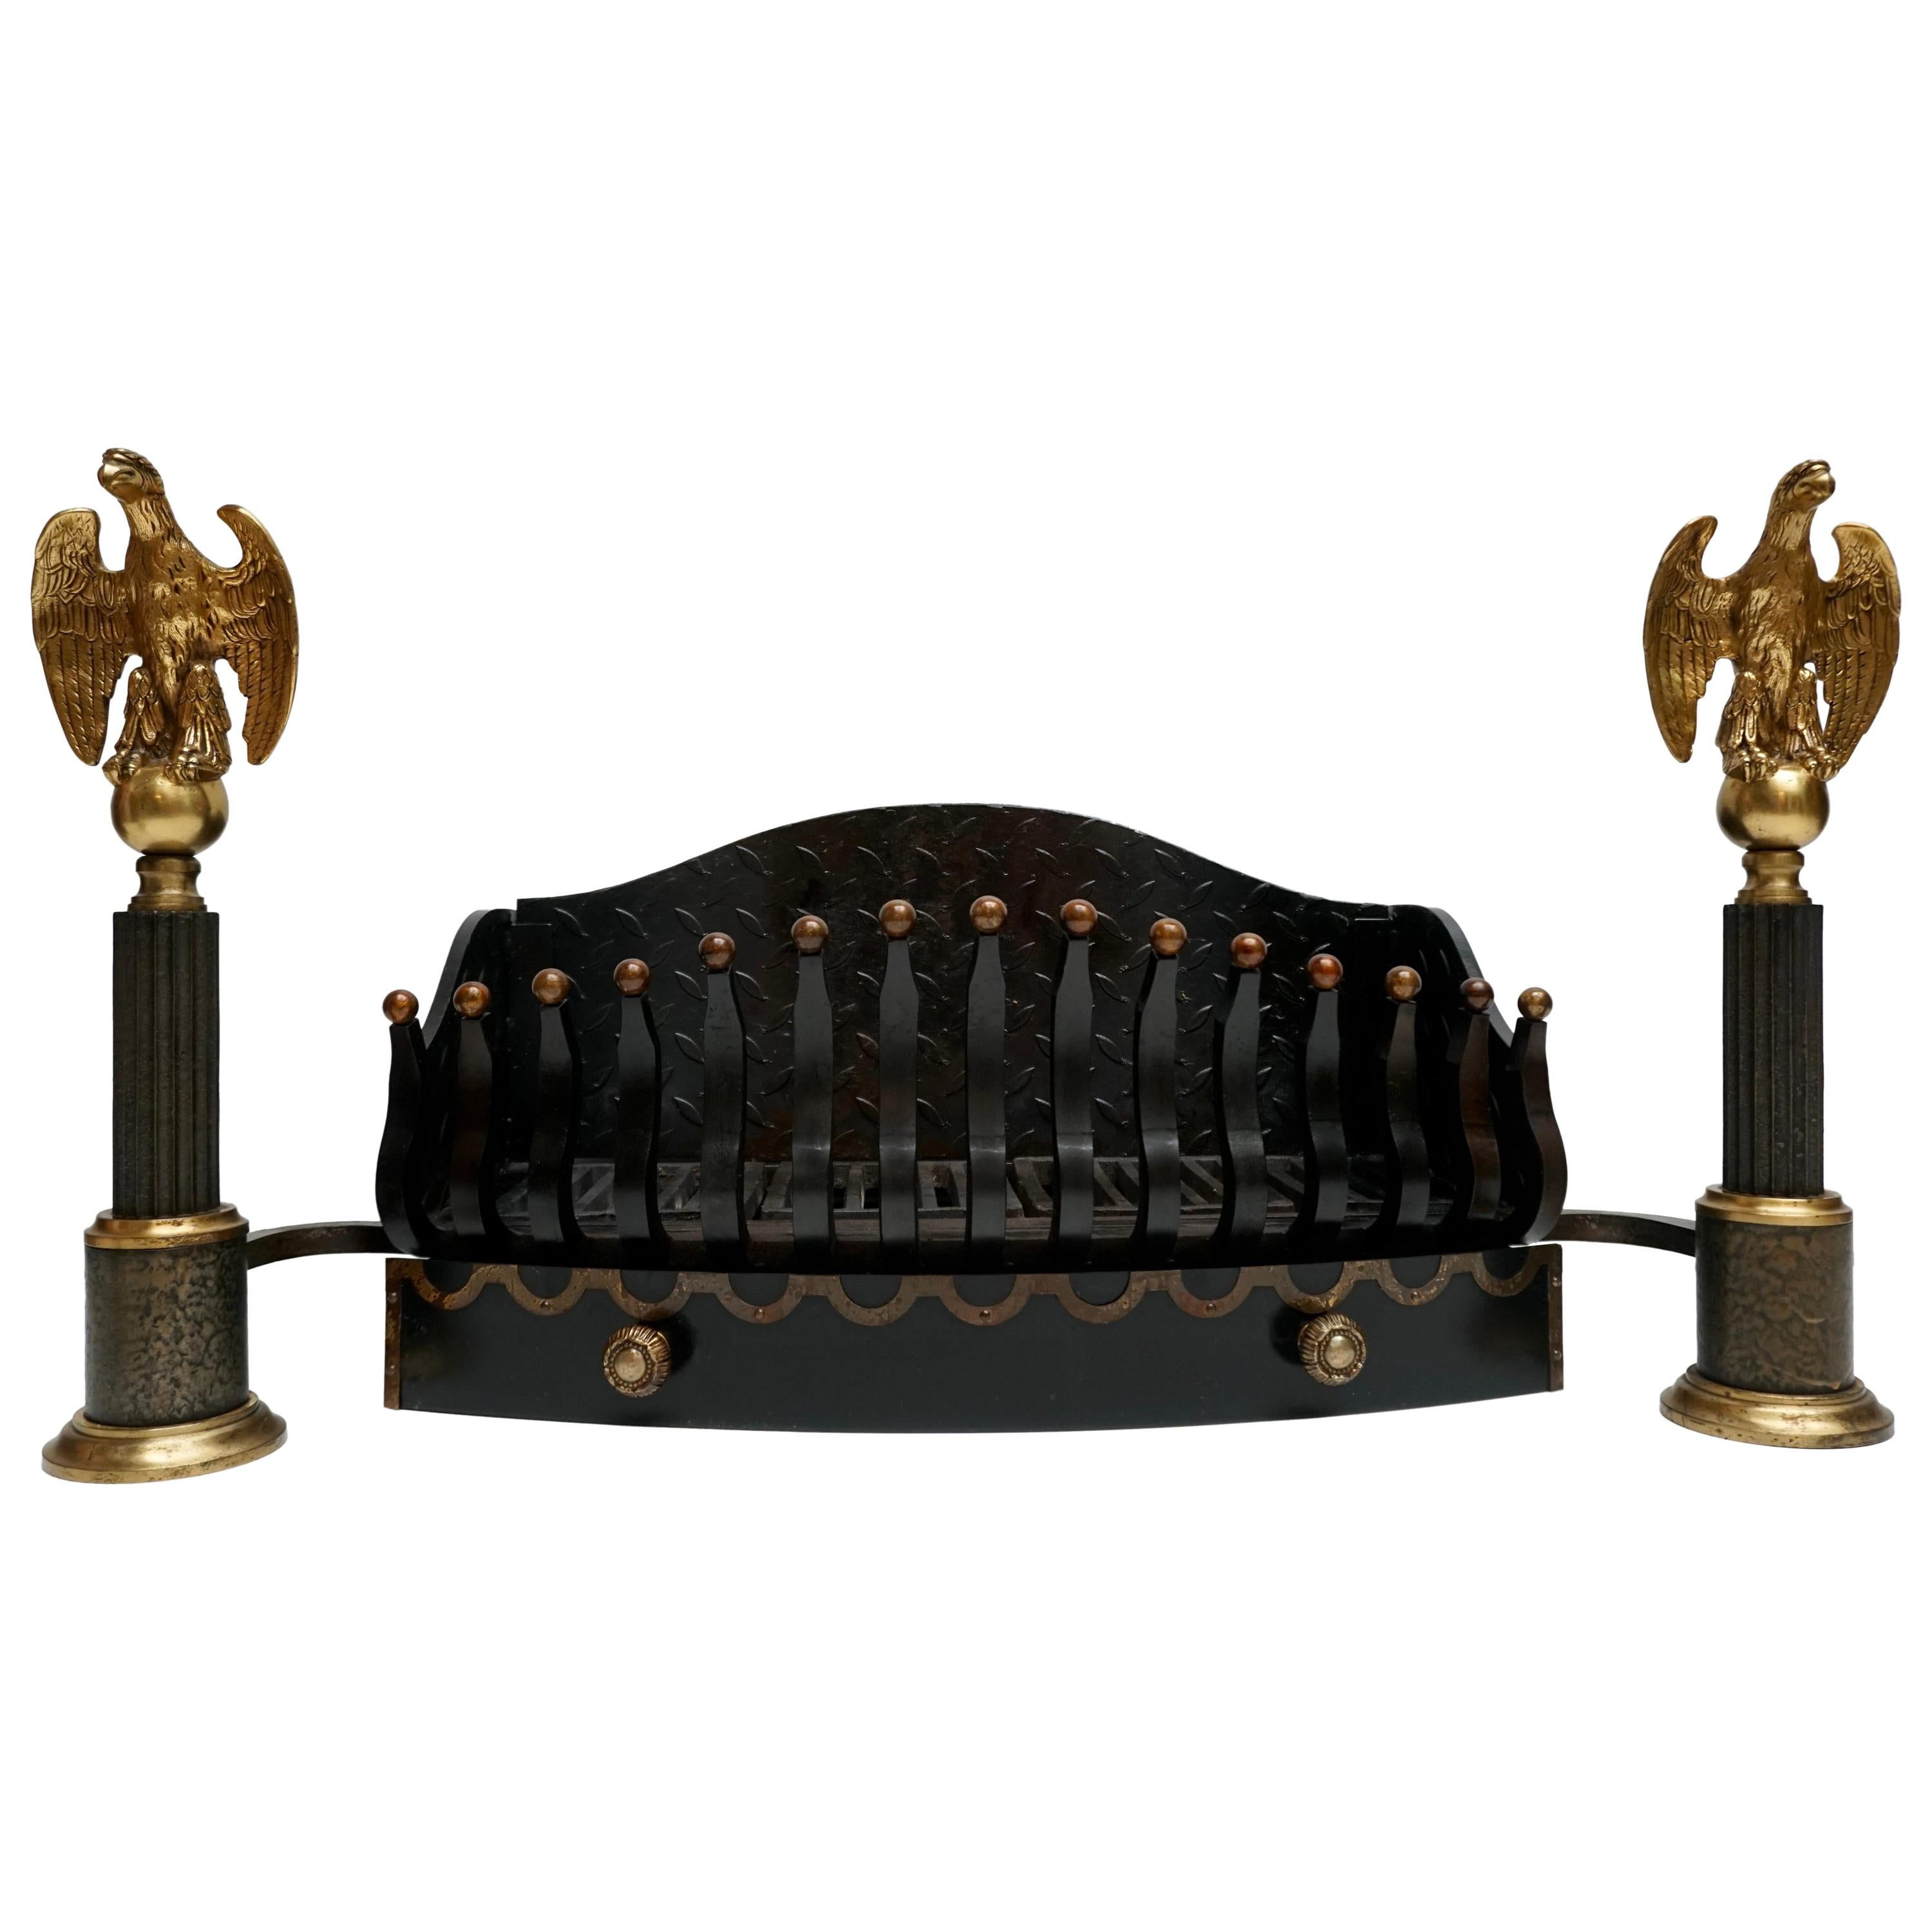 Monumental cesta de hierro fundido de finales del siglo XIX para parrillas de fuego con águilas de bronce